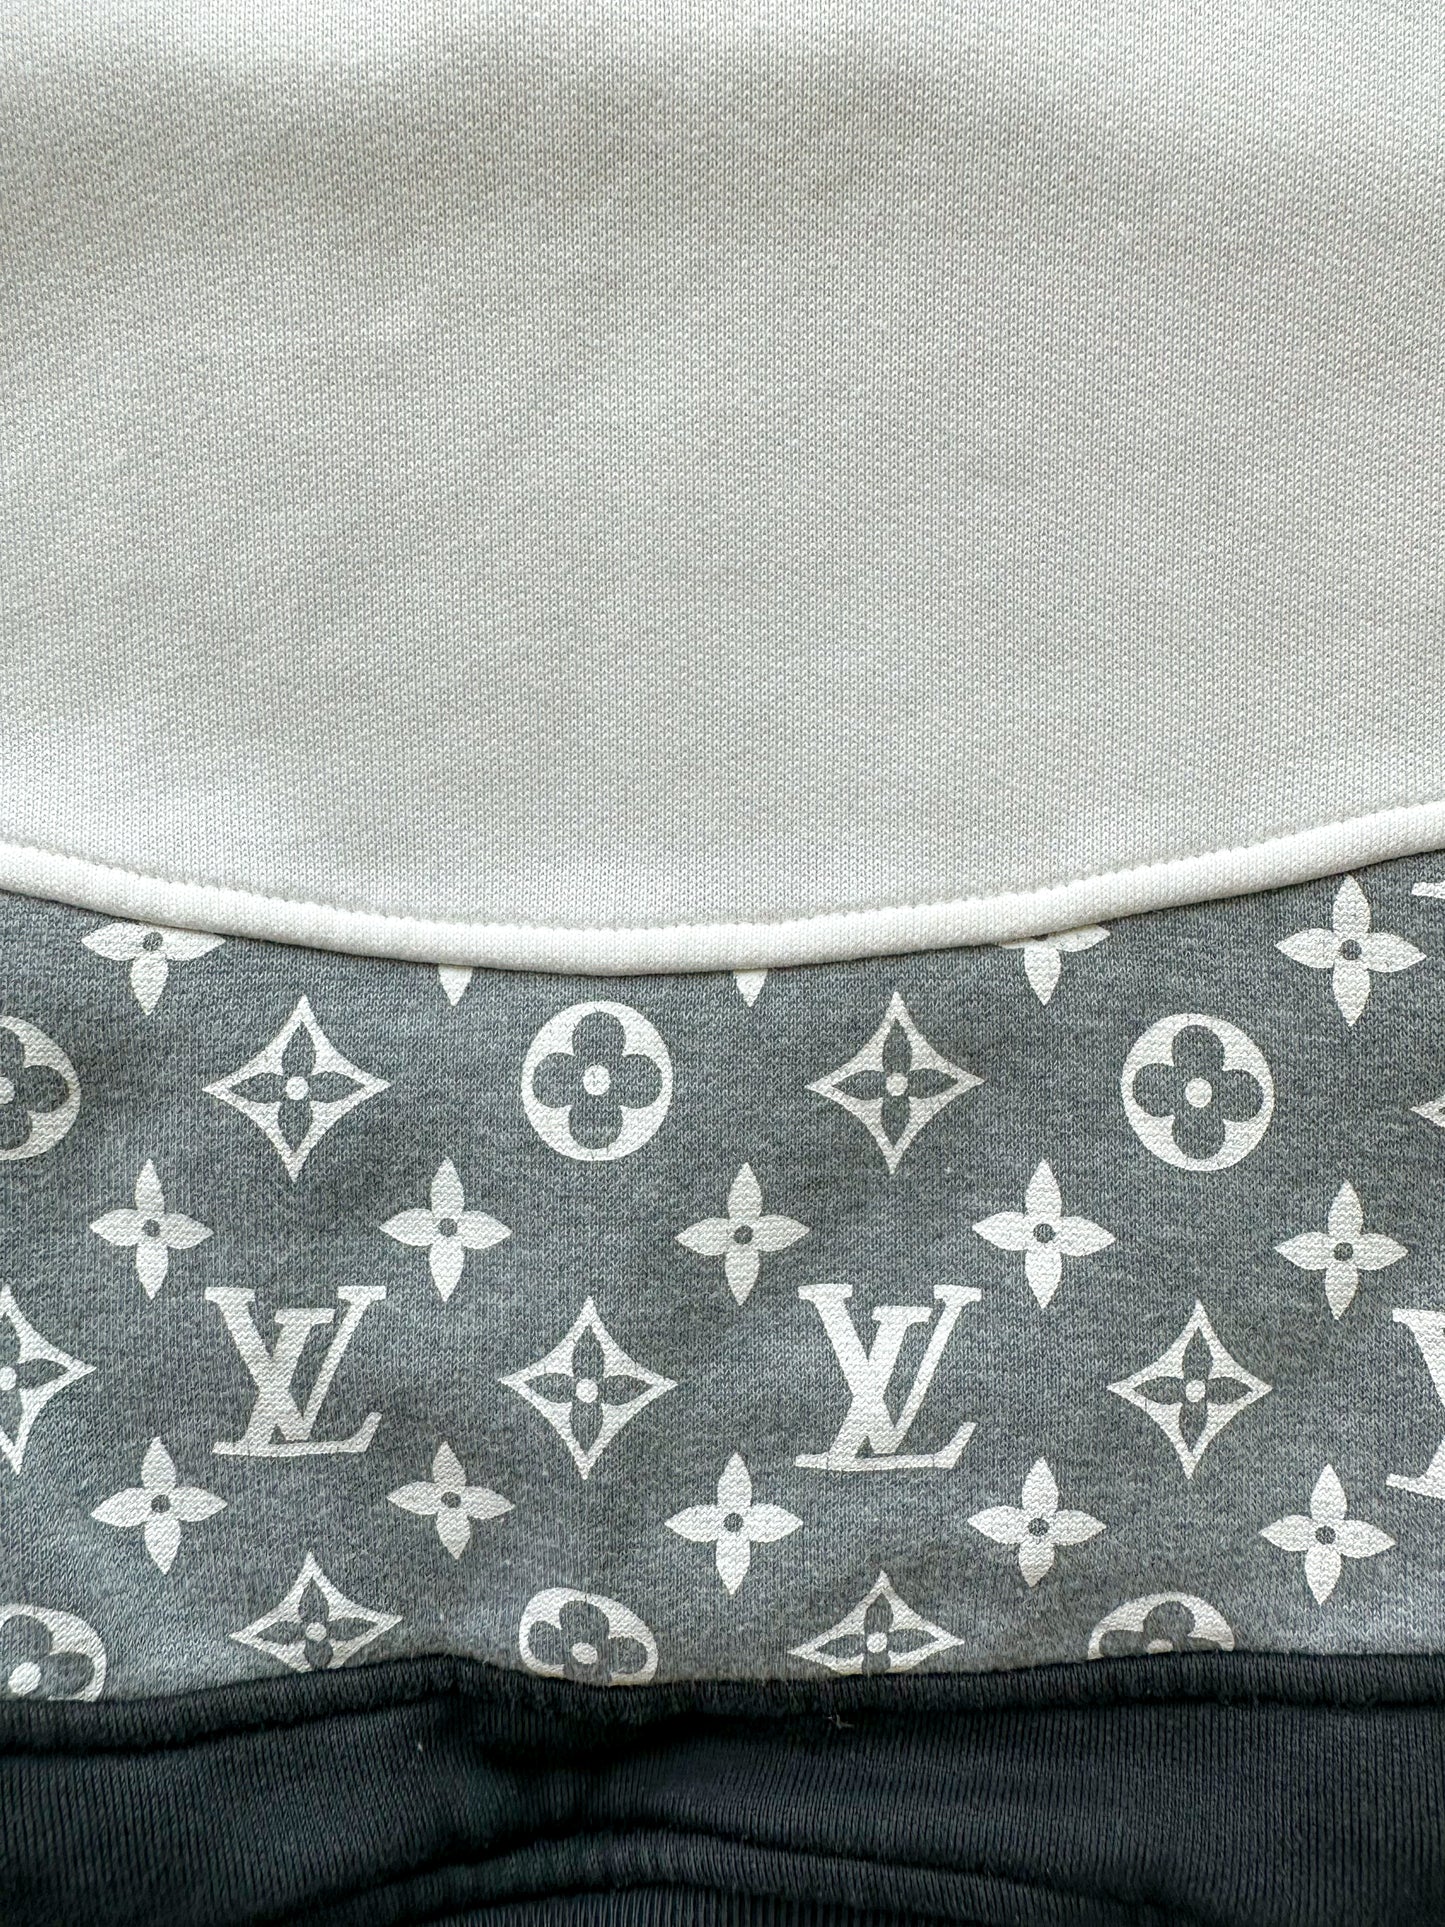 Louis Vuitton LV Monogram Circle Cut Black Sweater Hoodie Size